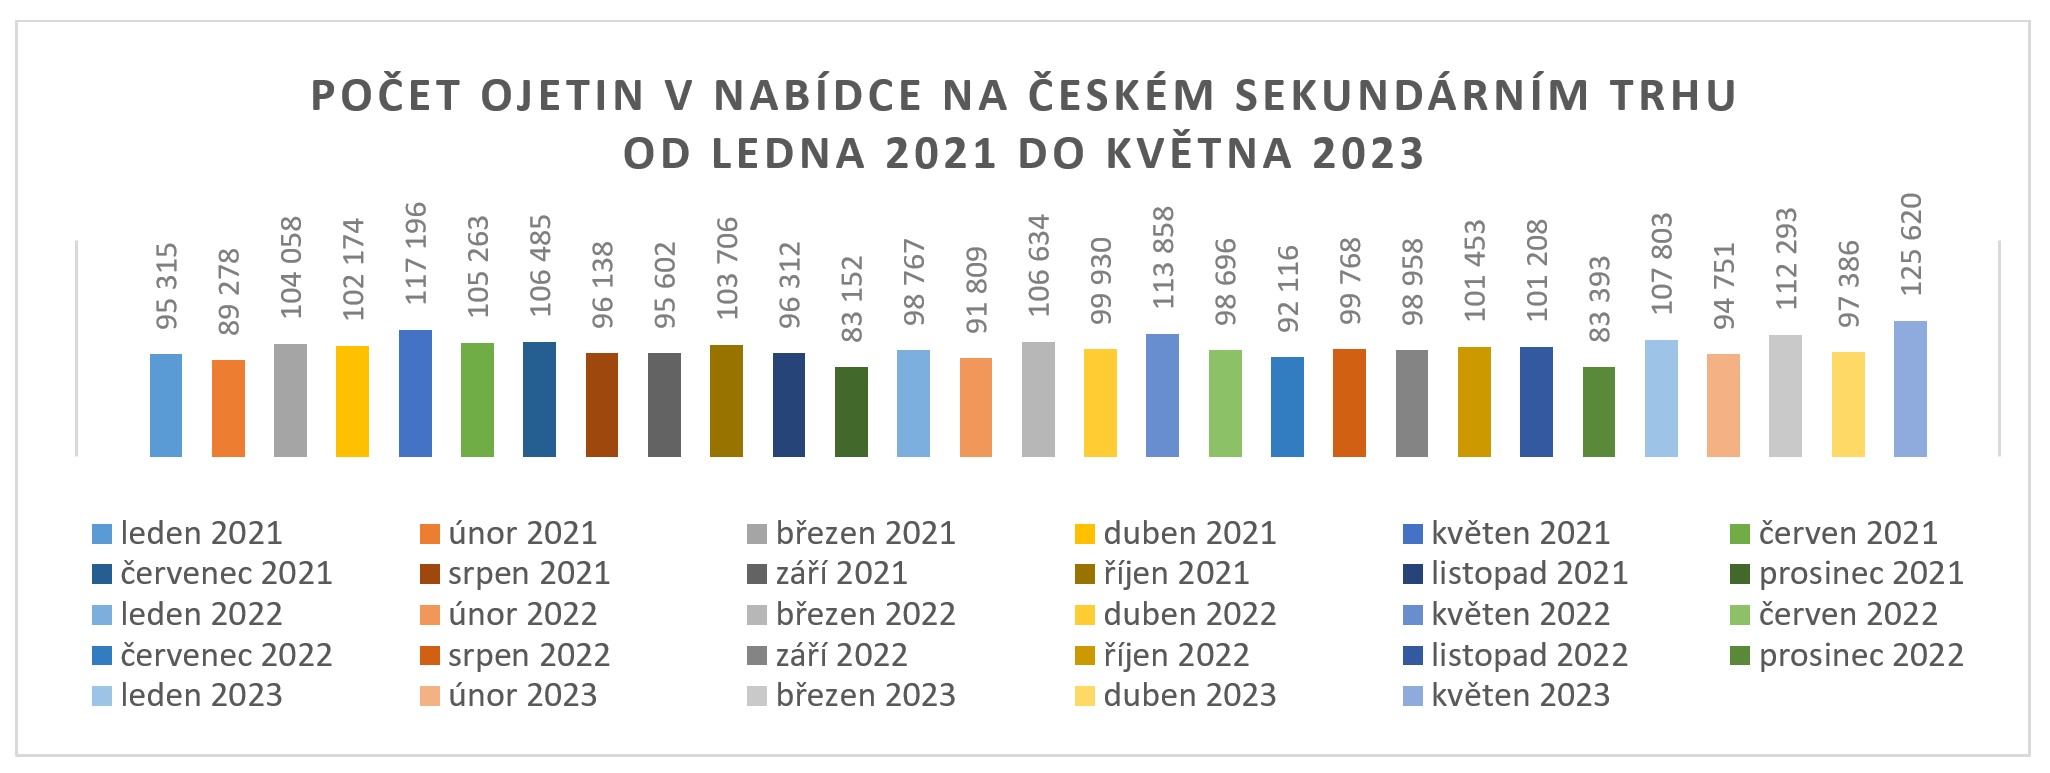 graf-pocet-ojetin-v-nabidce-01-2021-05-2023